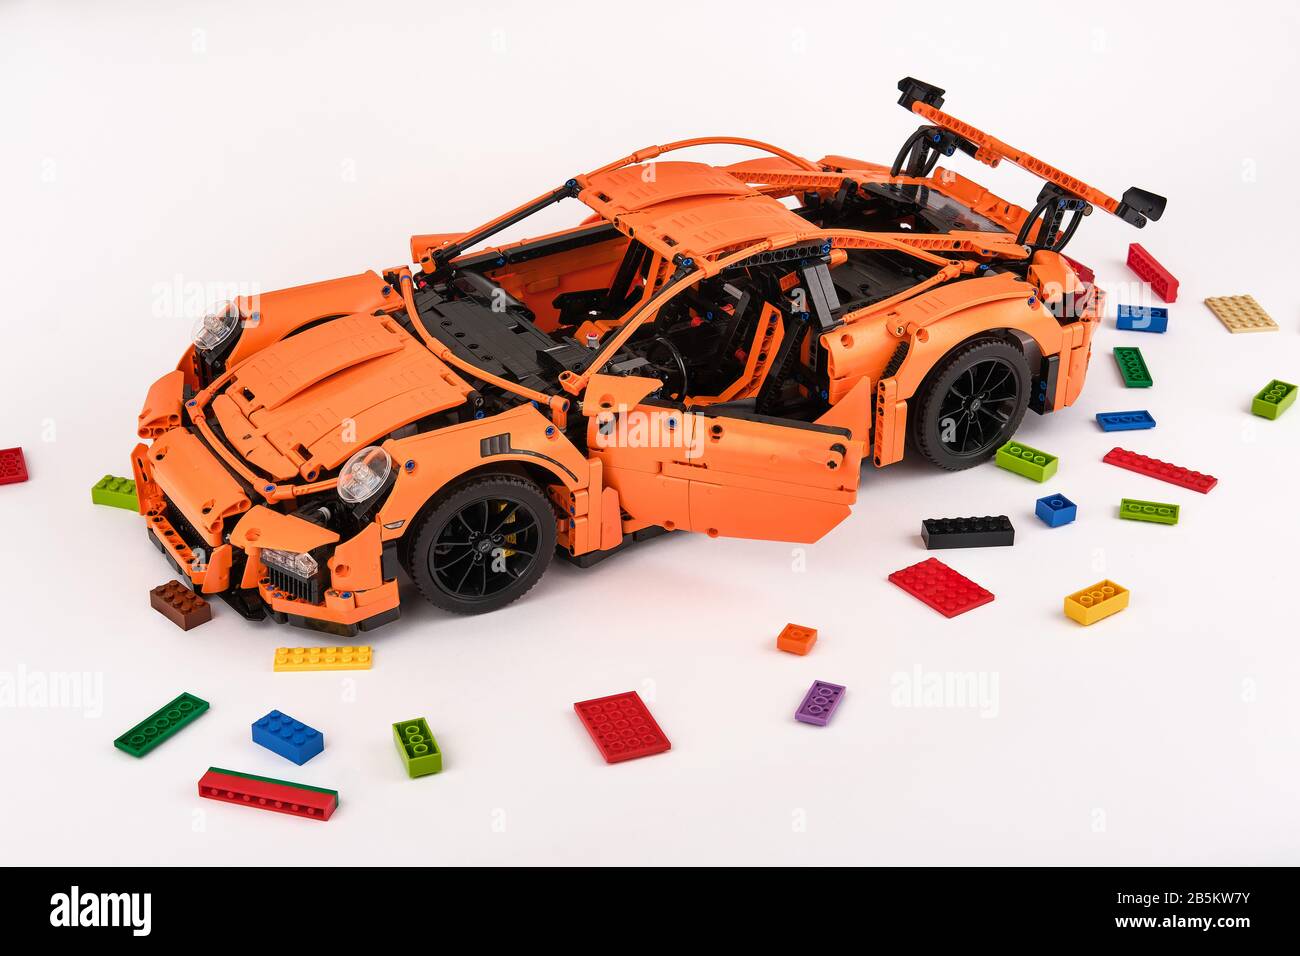 Différentes vues de la voiture LEGO Porsche GT 3 RS orange assemblée entourée de briques lego de rechange Banque D'Images